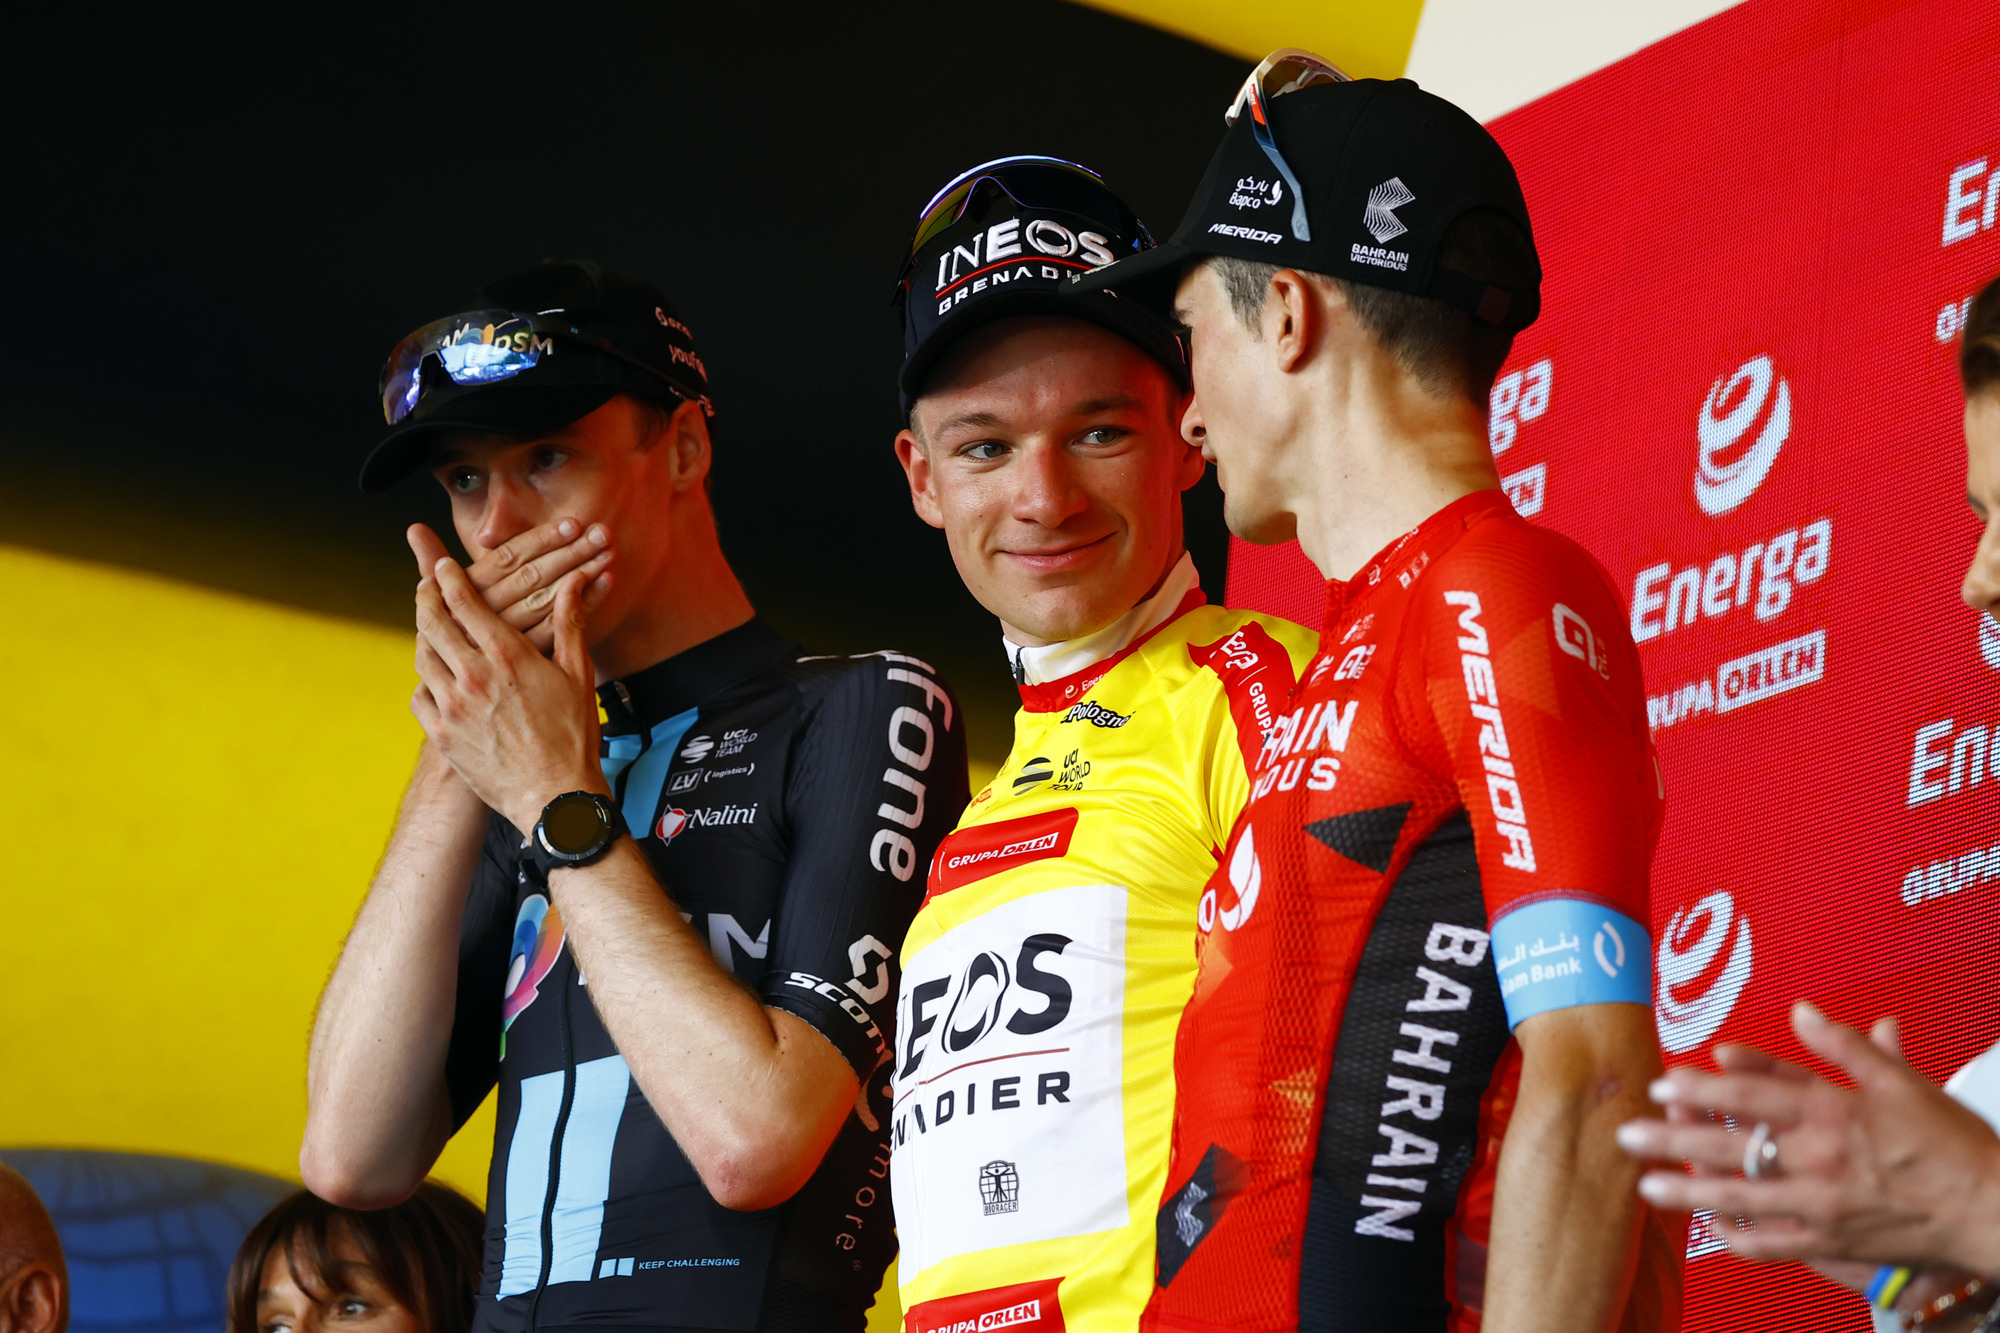 Thymen Arensman, Ethan Hayter i Pello Bilbao na podium Tour de Pologne